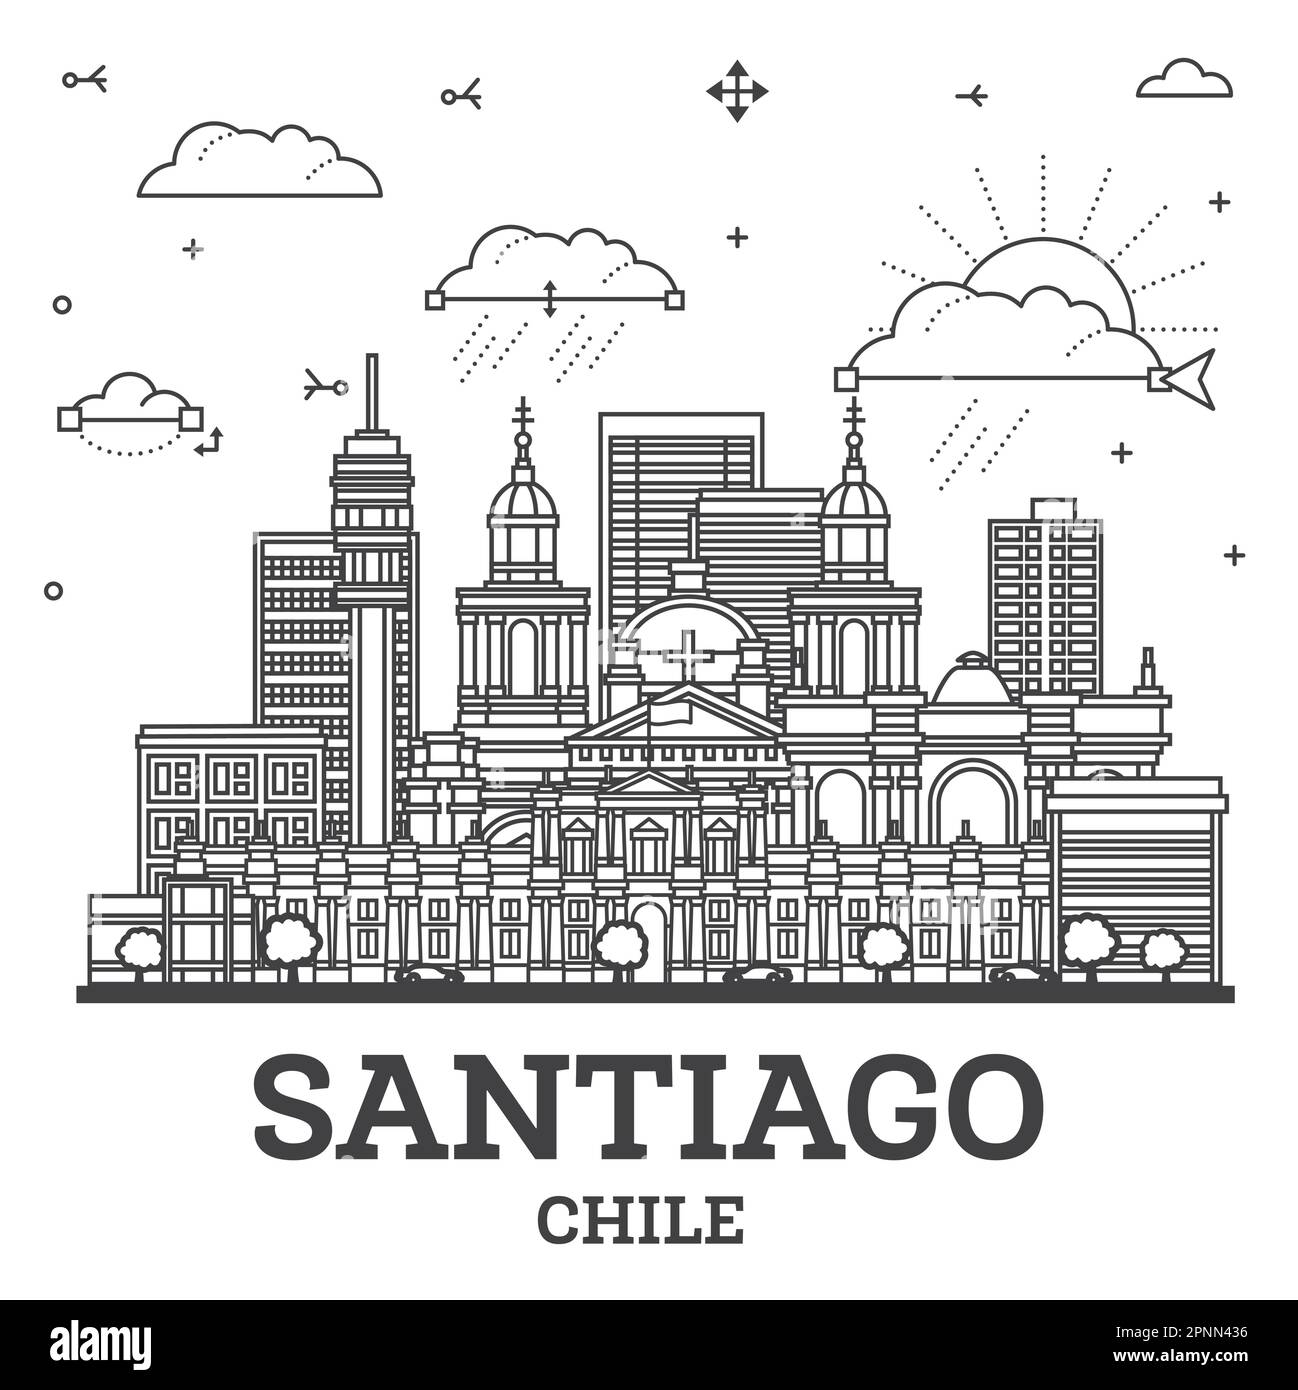 Skizzieren Sie die Skyline von Santiago Chile mit modernen und historischen Gebäuden, die auf Weiß isoliert sind. Vektorgrafik. Stadtbild von Santiago mit Wahrzeichen. Stock Vektor